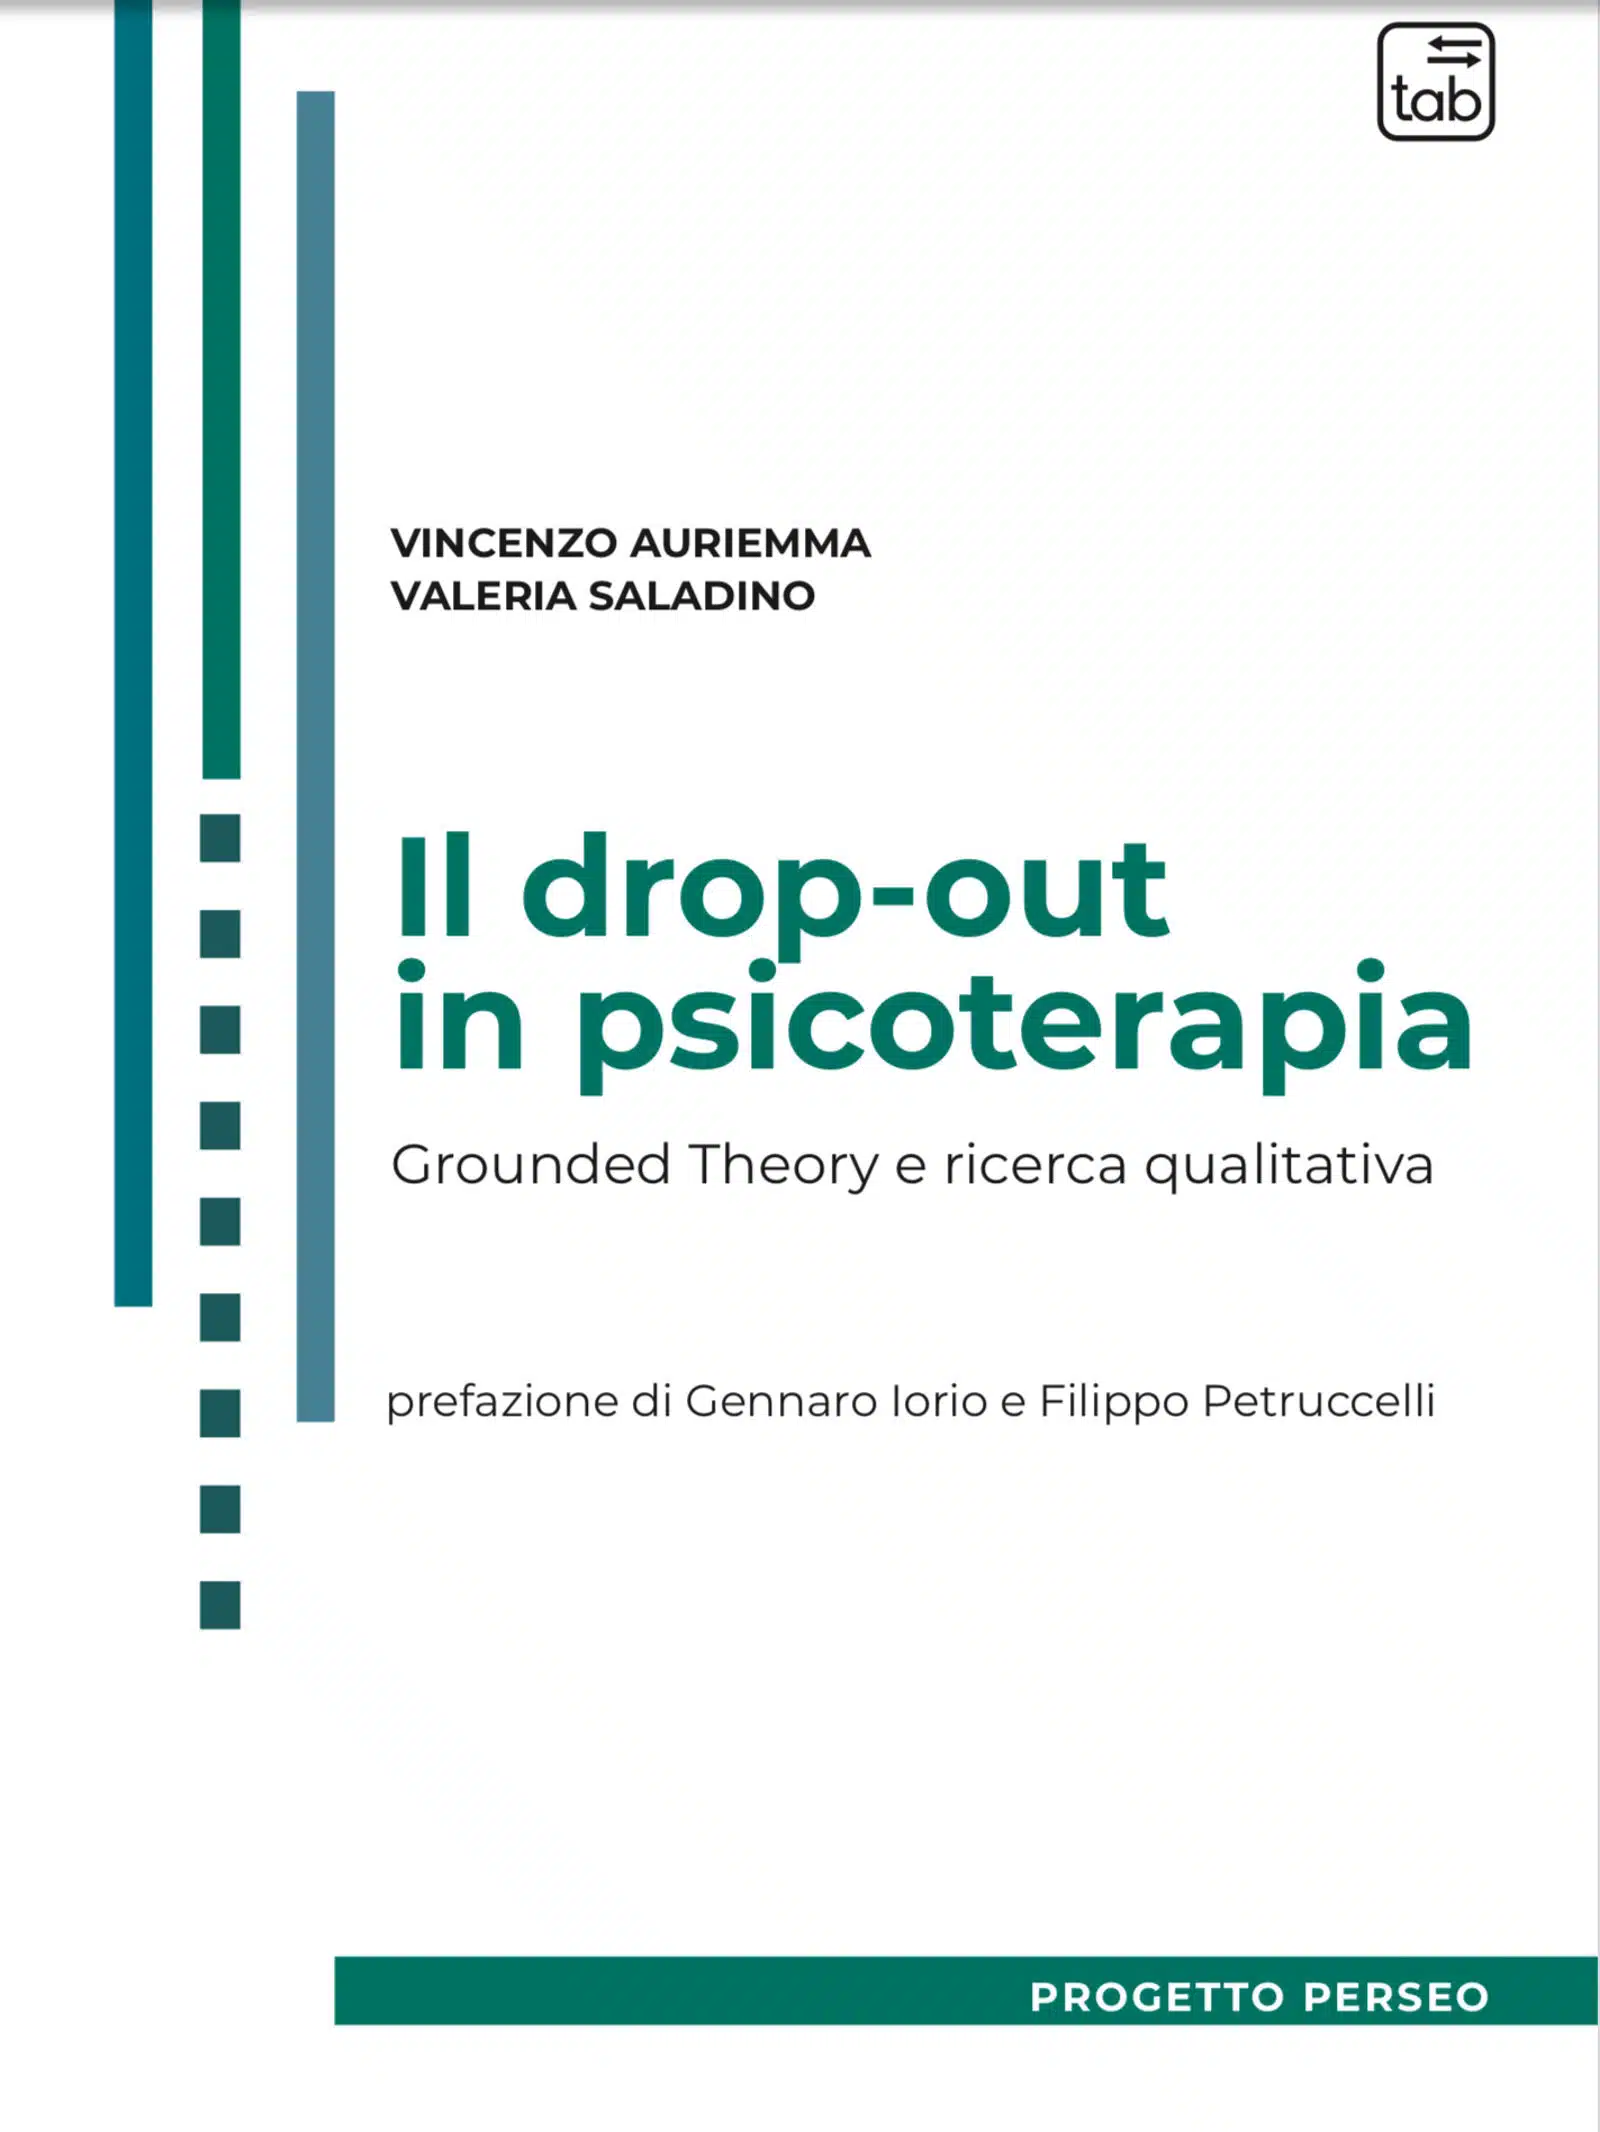 Il drop out in psicoterapia 2022 di Auriemma e Saladino Recensione Featured